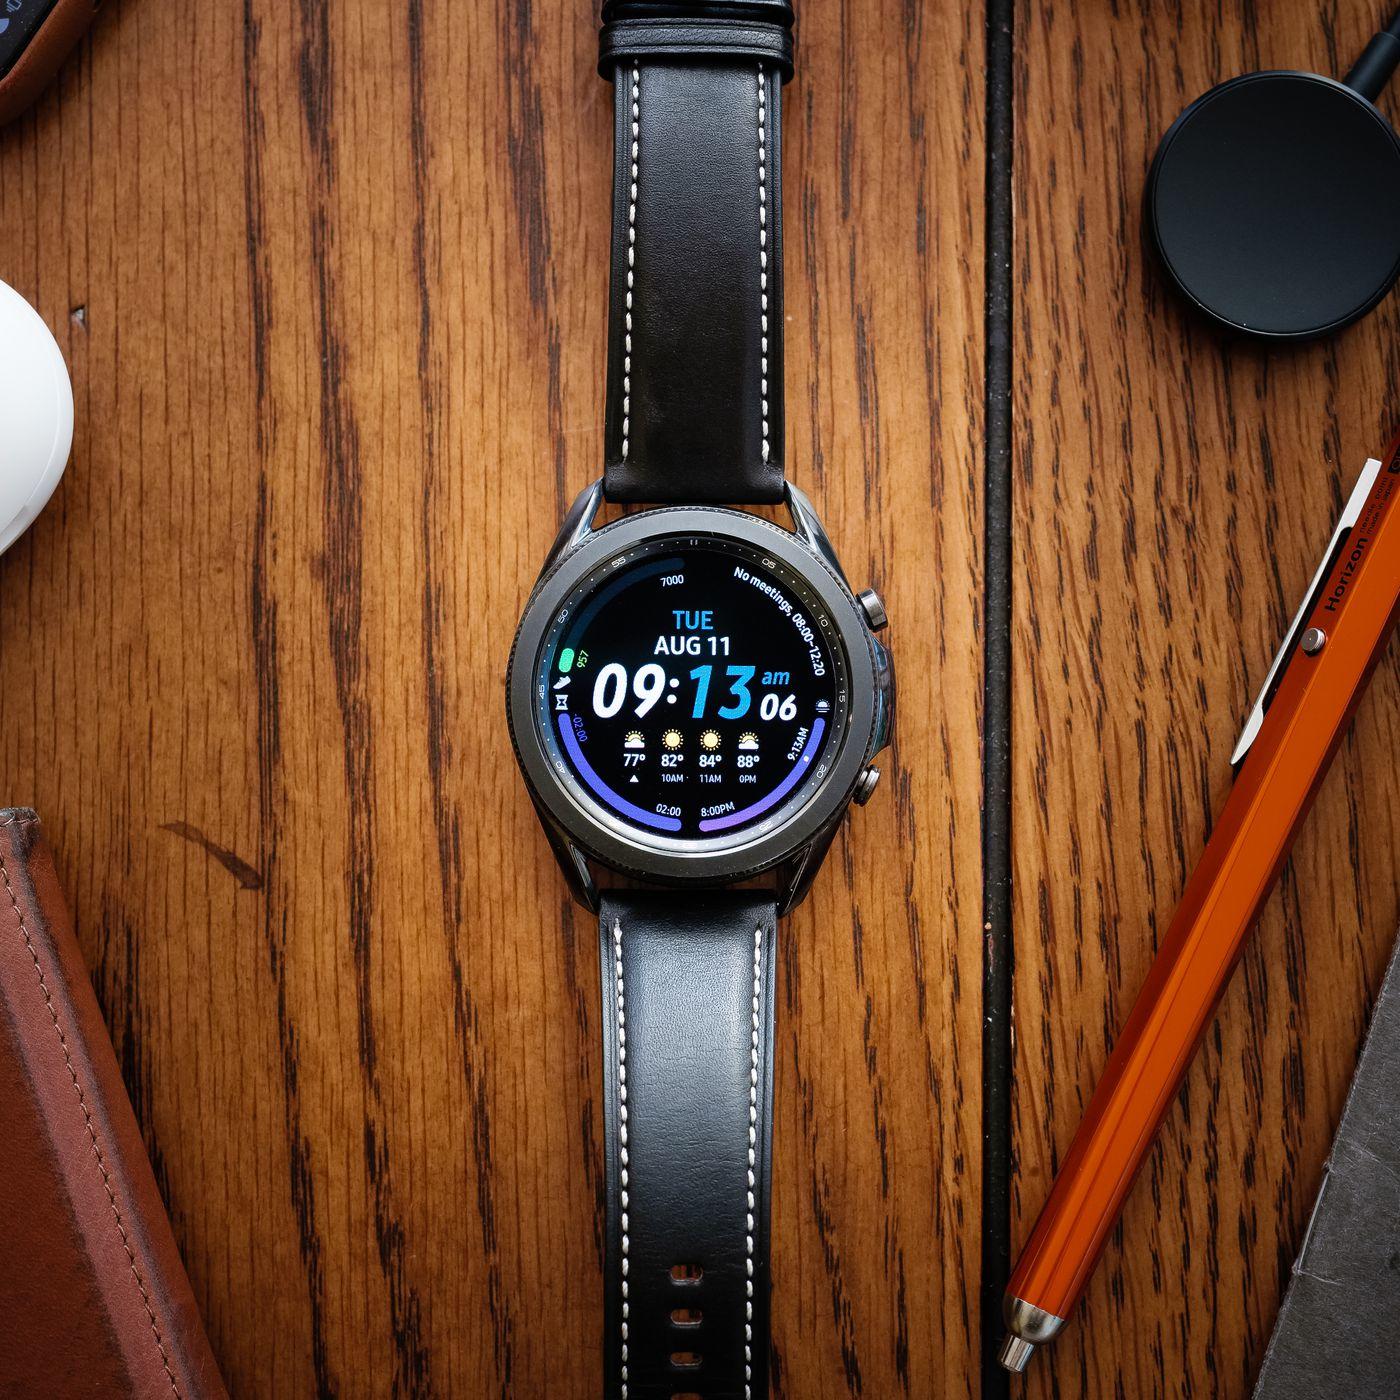 Hướng dẫn cách chỉnh giờ đồng hồ thông minh smartwatch đơn giản, chính xác nhanh chóng